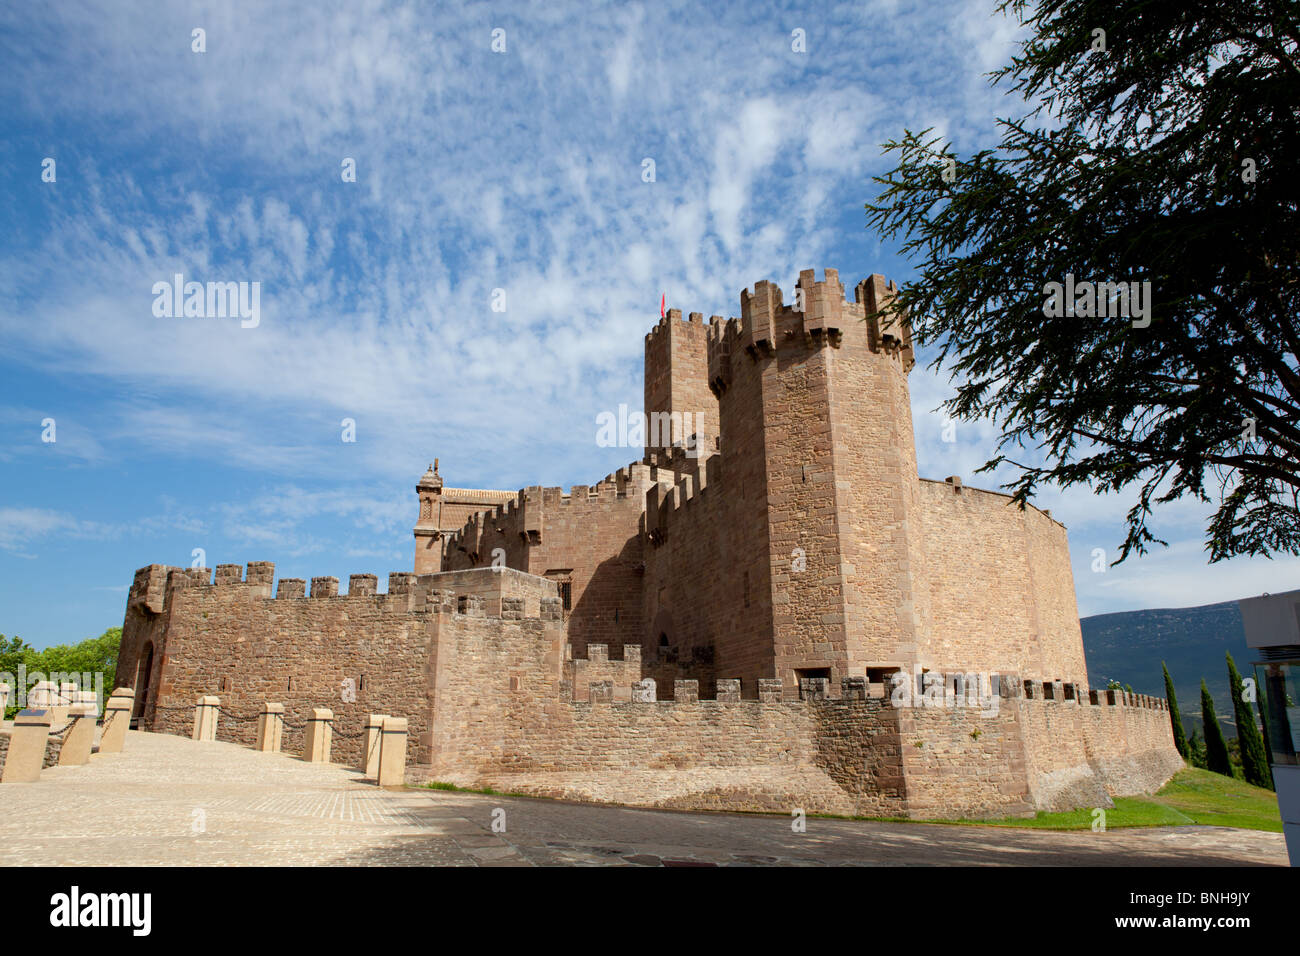 El castillo de Javier, en la provincia de Navarra - País Vasco de España. Famoso por ser el lugar de nacimiento de San Francisco Javier. Foto de stock